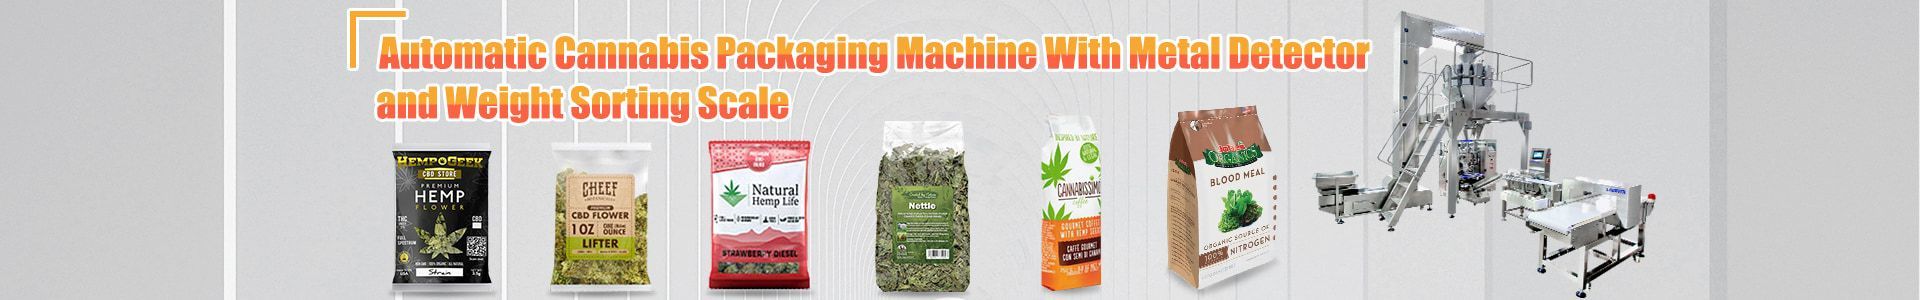 Cannabis Packaging Machine